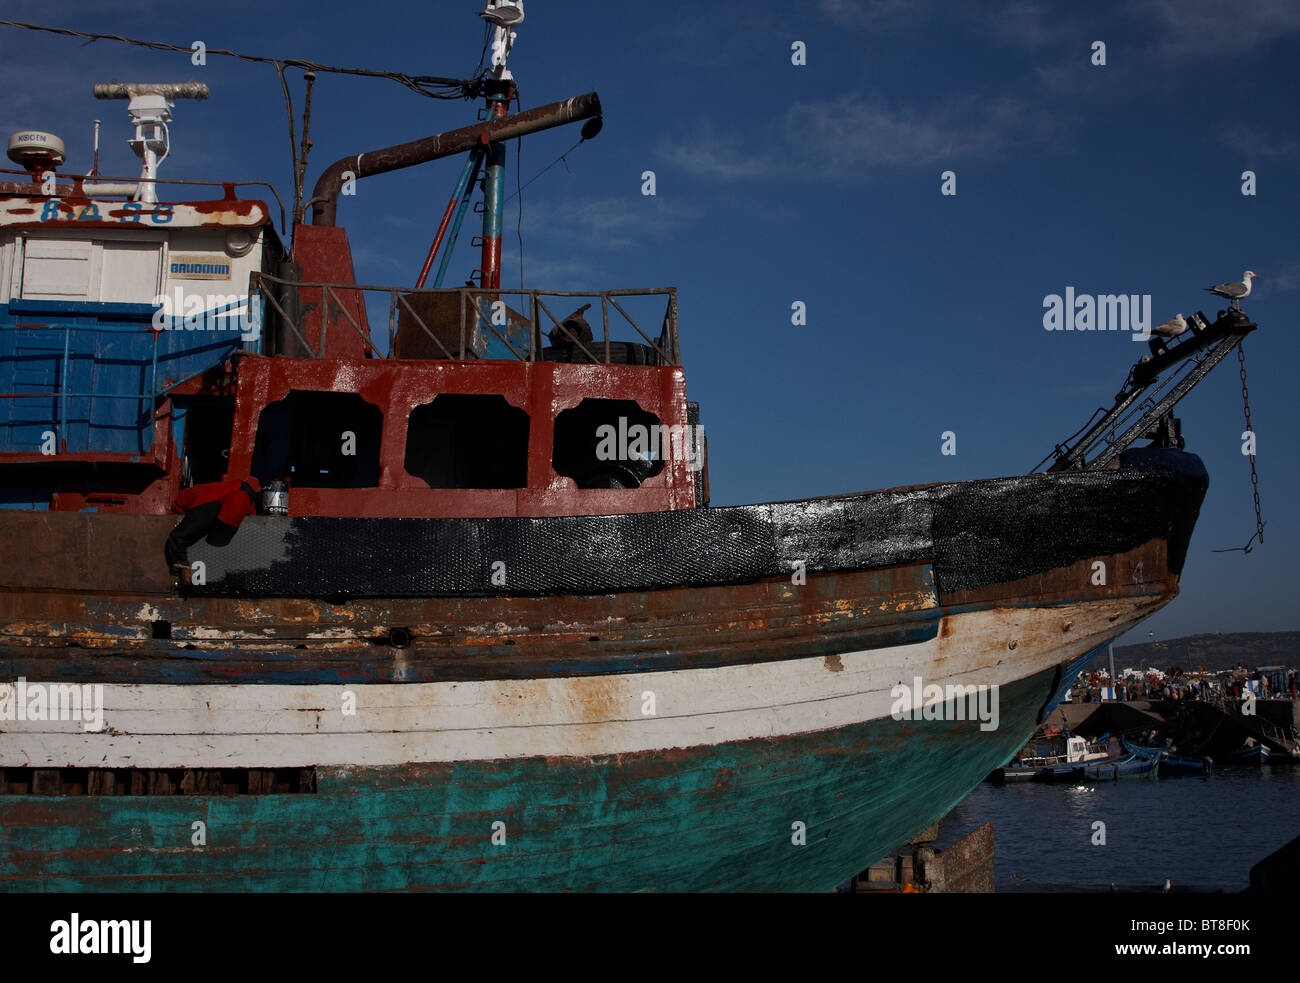 Une nouvelle couche de peinture est appliquée sur ce bateau de pêche à Essaouira, Maroc Banque D'Images